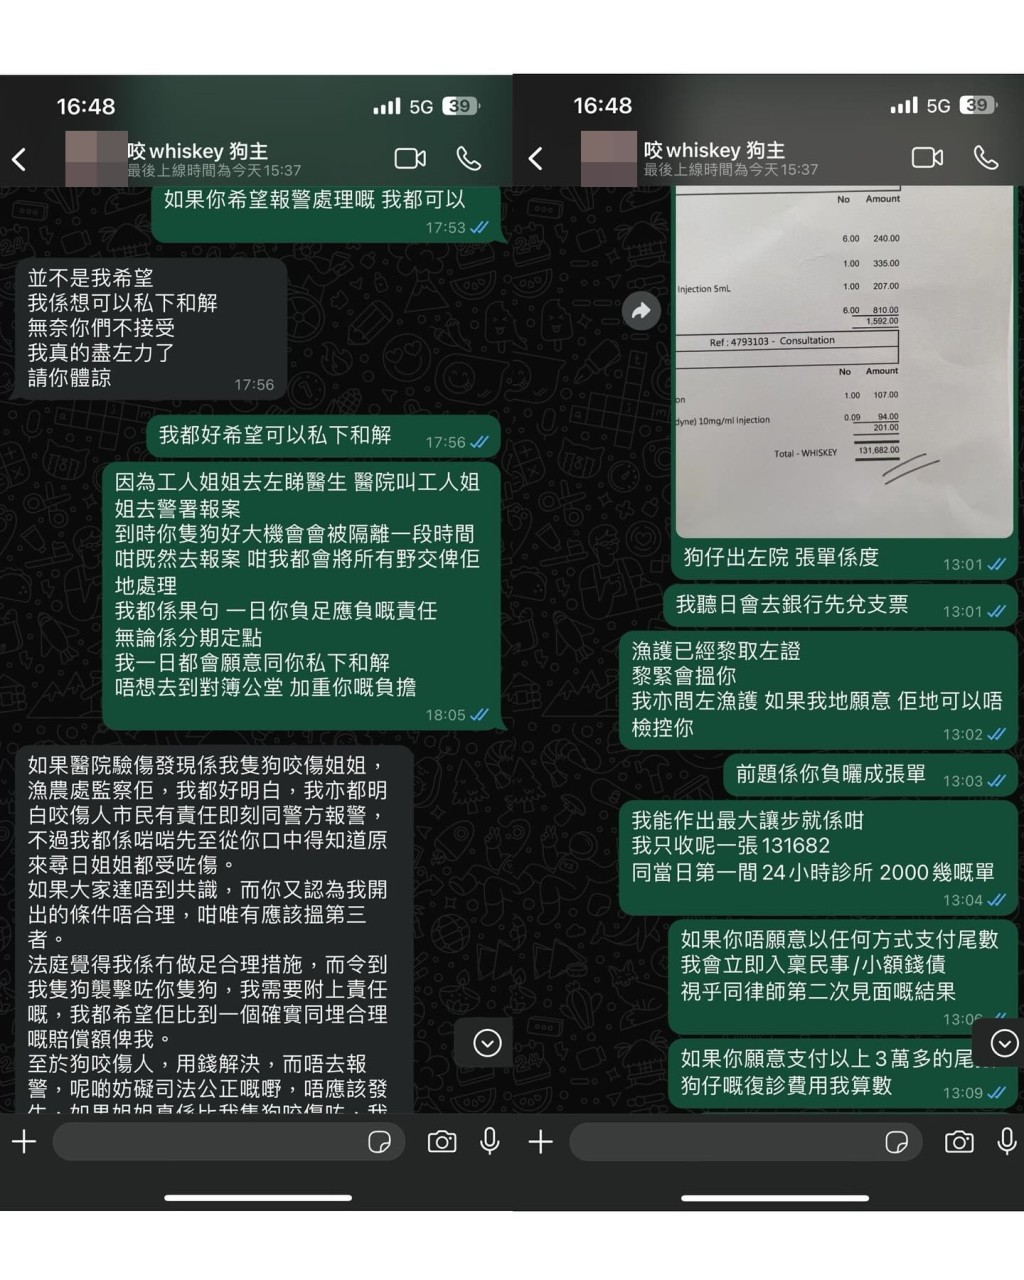 李亦乔指与不介意公开对方WhatsApp对话内容，有需要全部公开也可以。